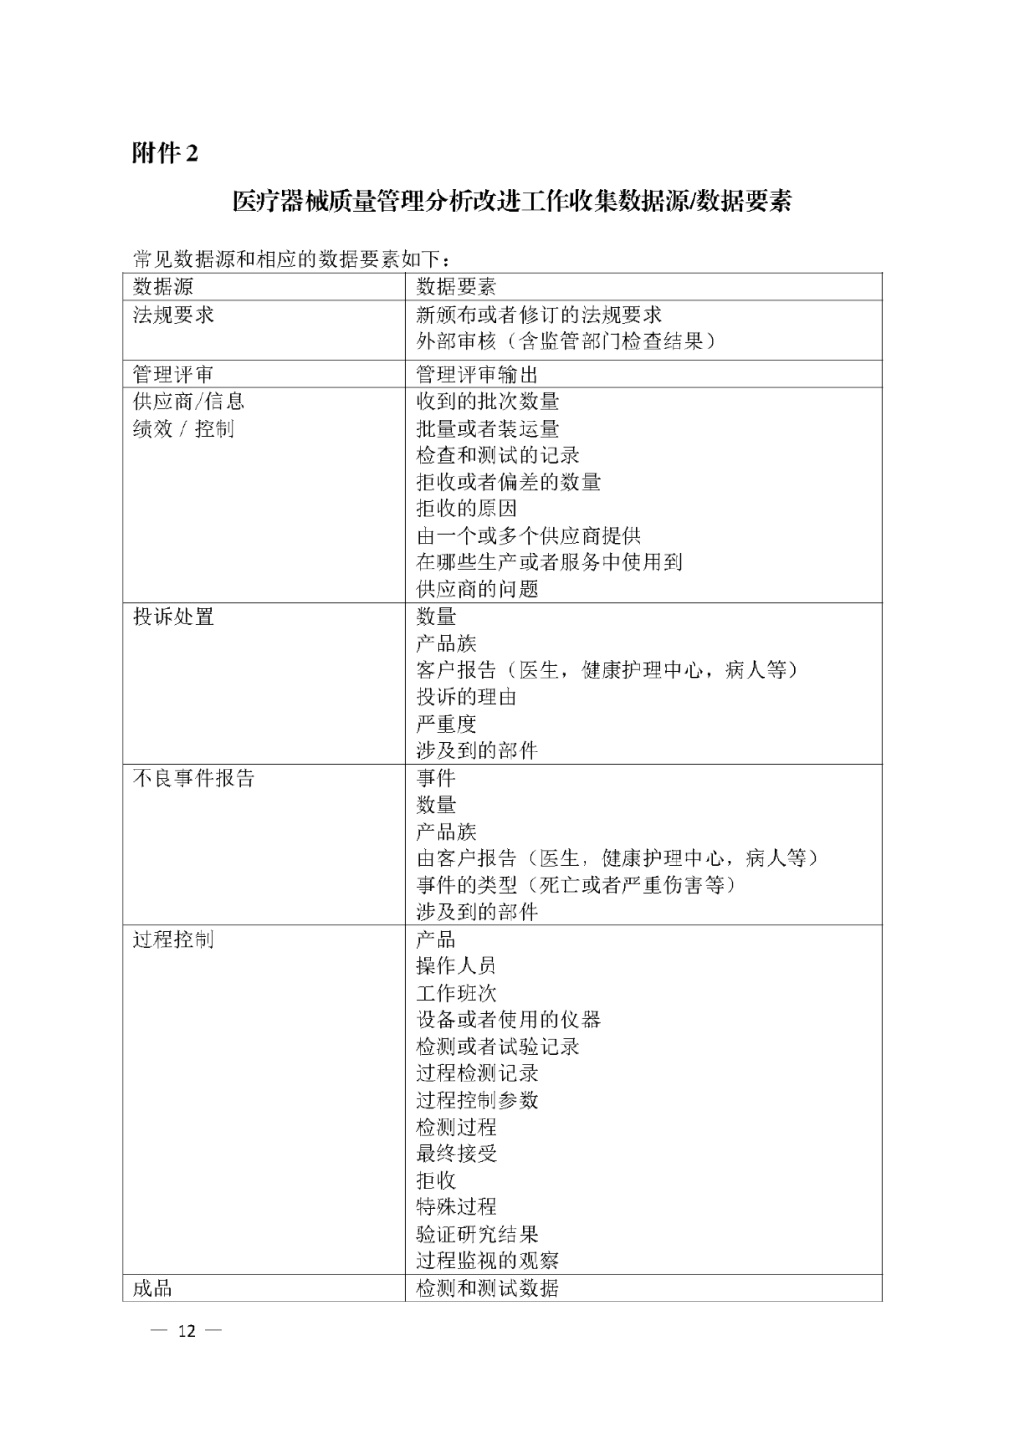 【安徽】发布医疗器械质量管理分析改进工作指南(图12)